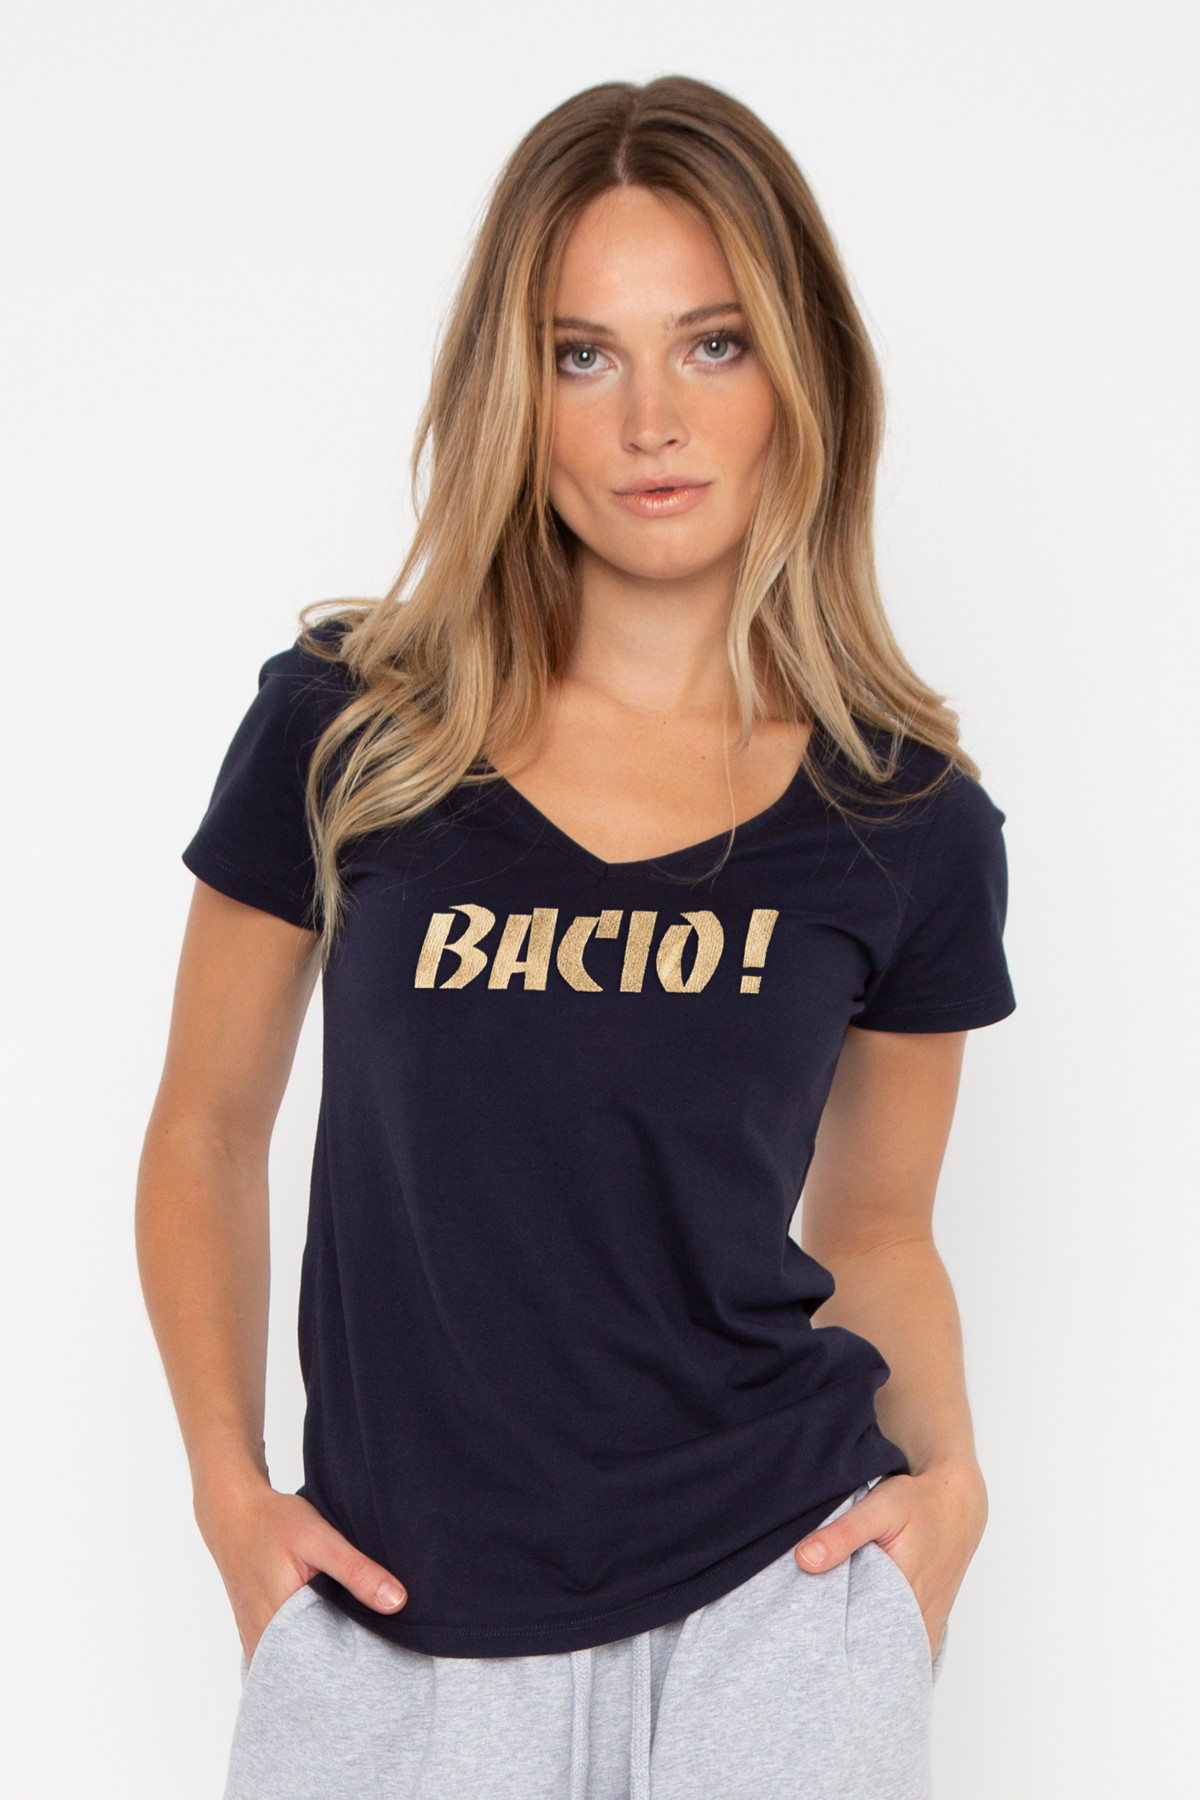 Tshirt BACIO